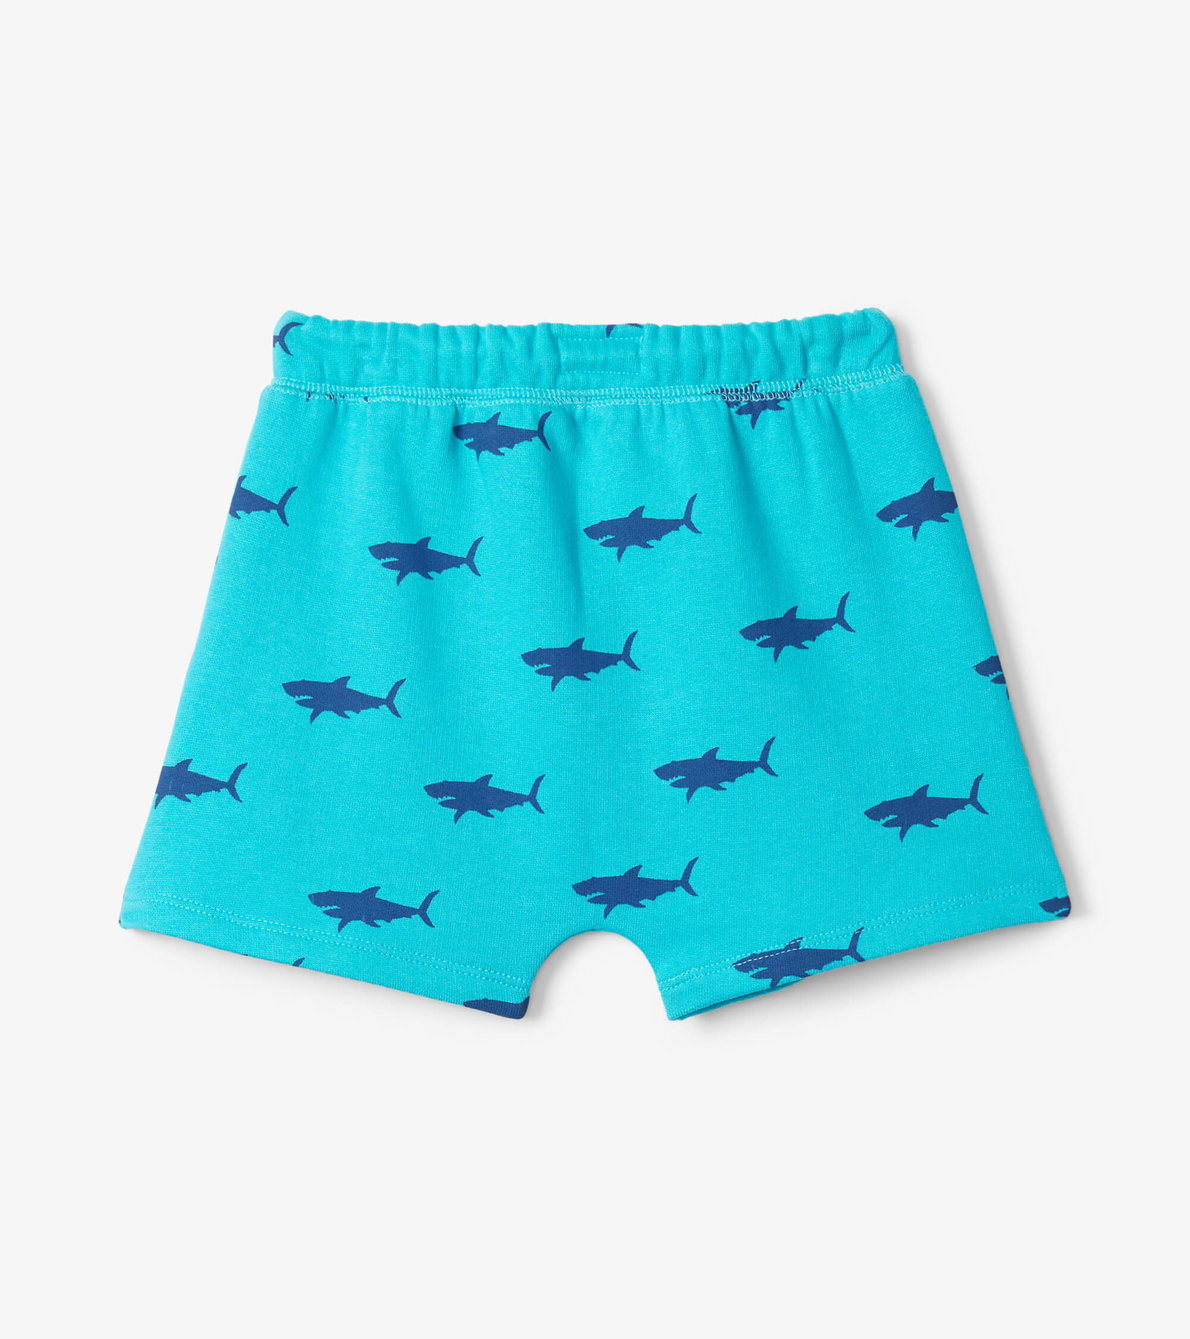 View larger image of Beachy Sharks Toddler Kanga Shorts